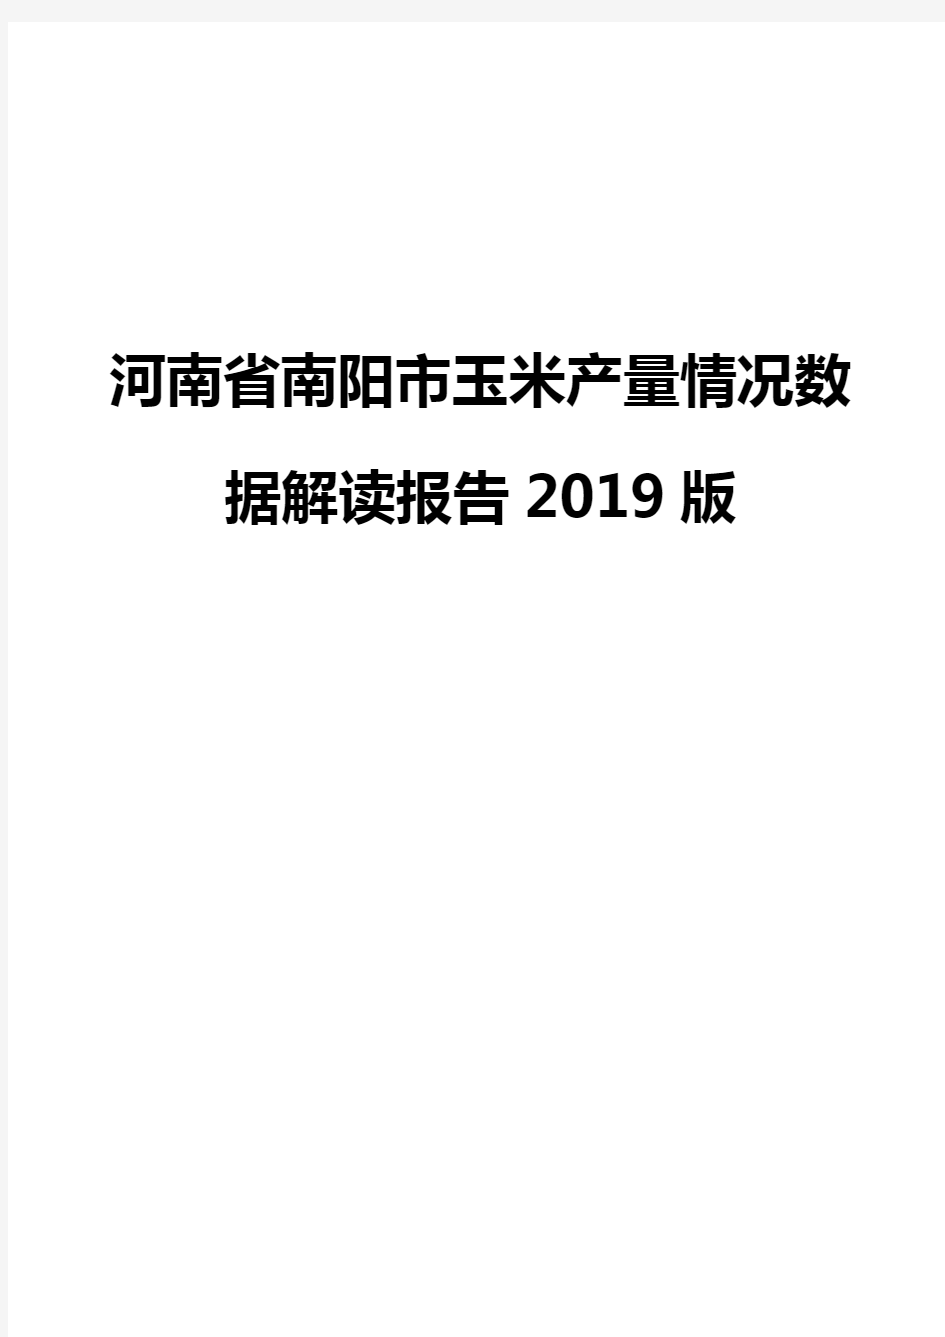 河南省南阳市玉米产量情况数据解读报告2019版